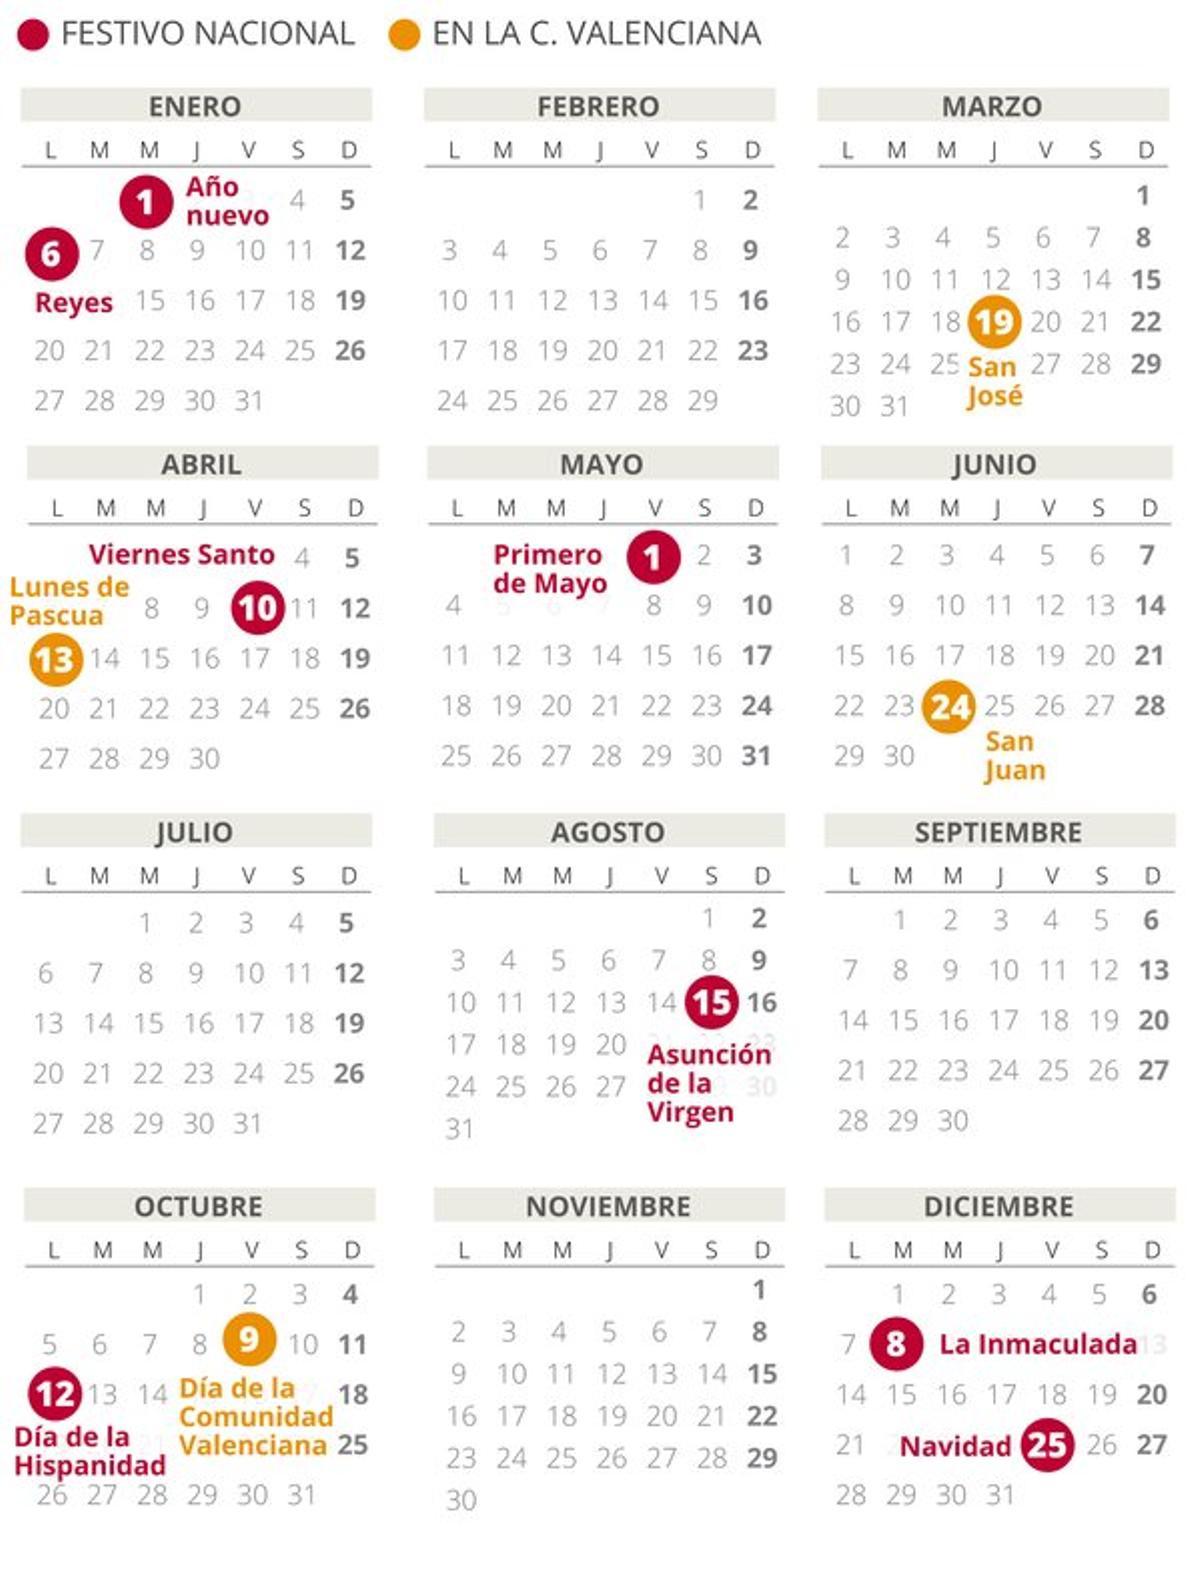 Calendario laboral de la Comunidad Valenciana del 2020.